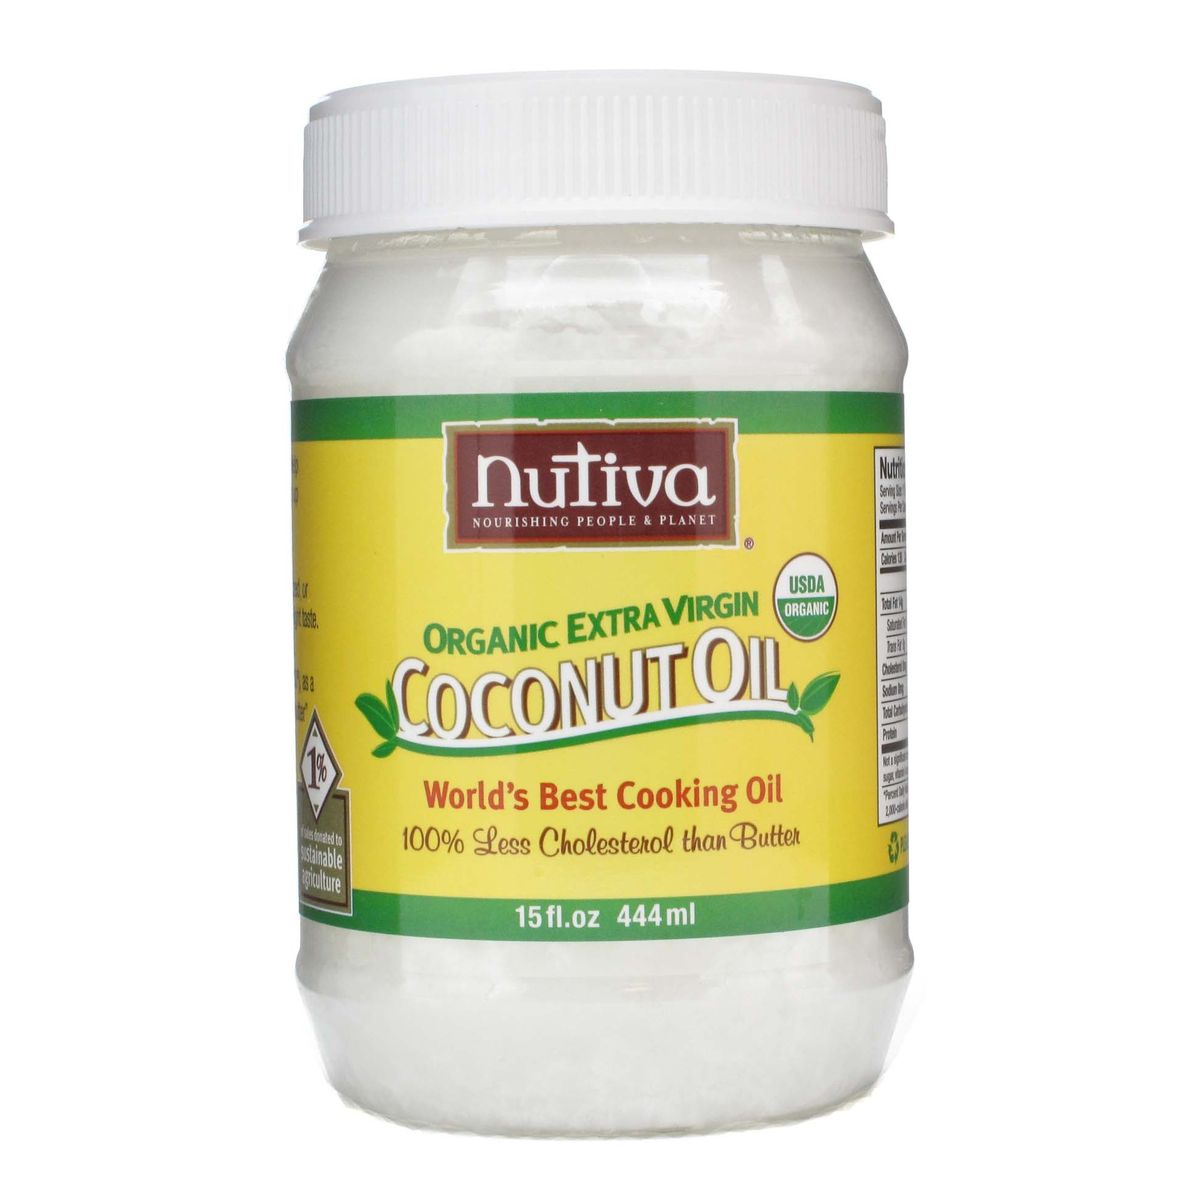 Koju vrstu kokosovog ulja trebate koristiti za zube?